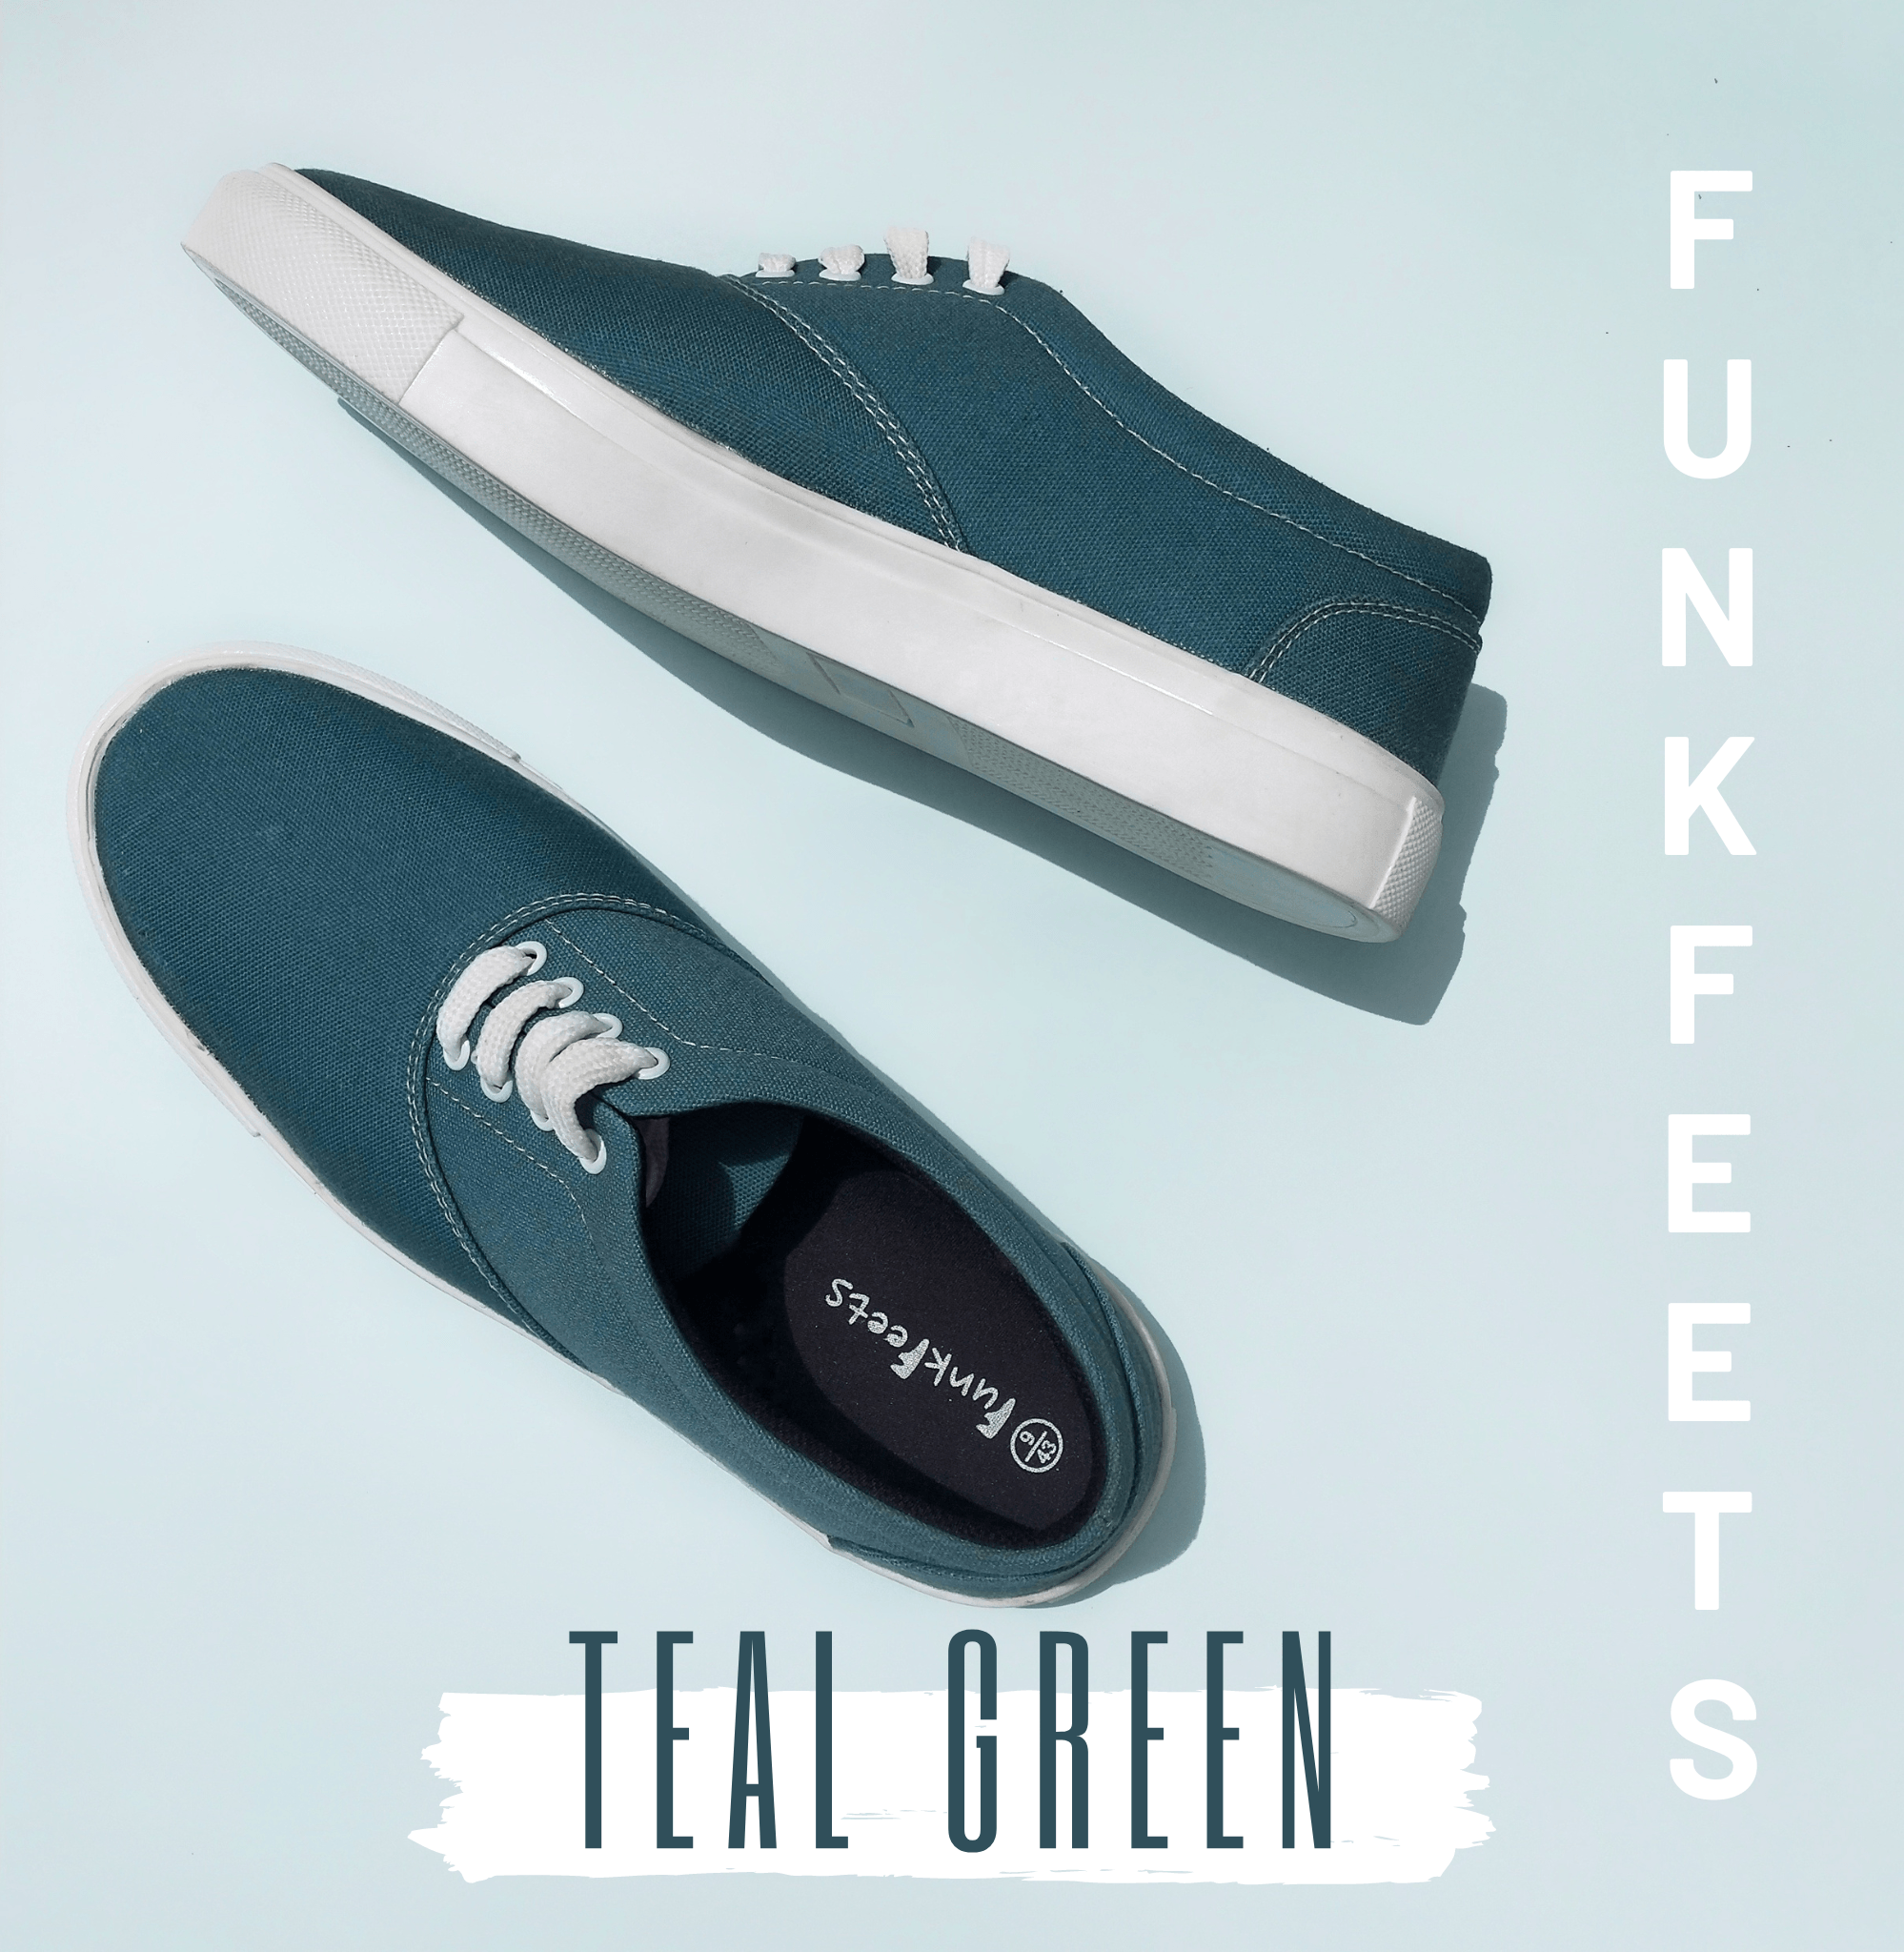 Funkfeets Unisex Teal Green Sneakers